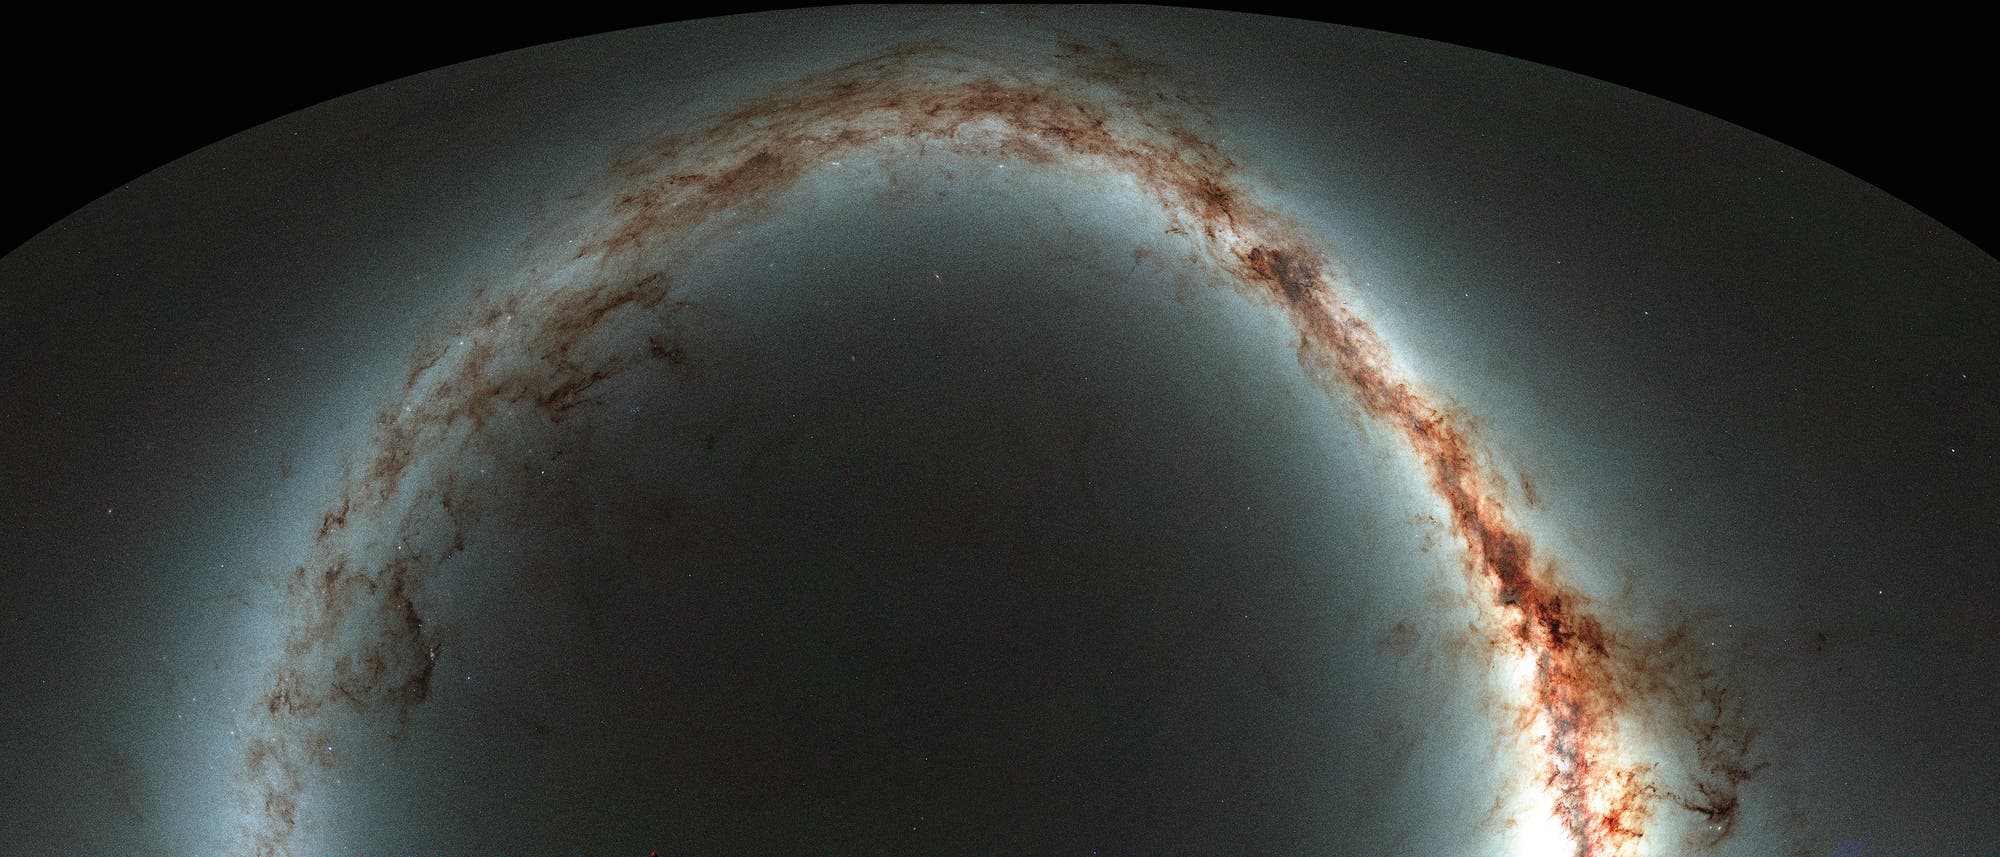 Auf der neuen Himmelskarte des 1,8-Meter-Teleskops Pan-STARRS spannt sich die Milchstraße als helles Band über den Himmel.